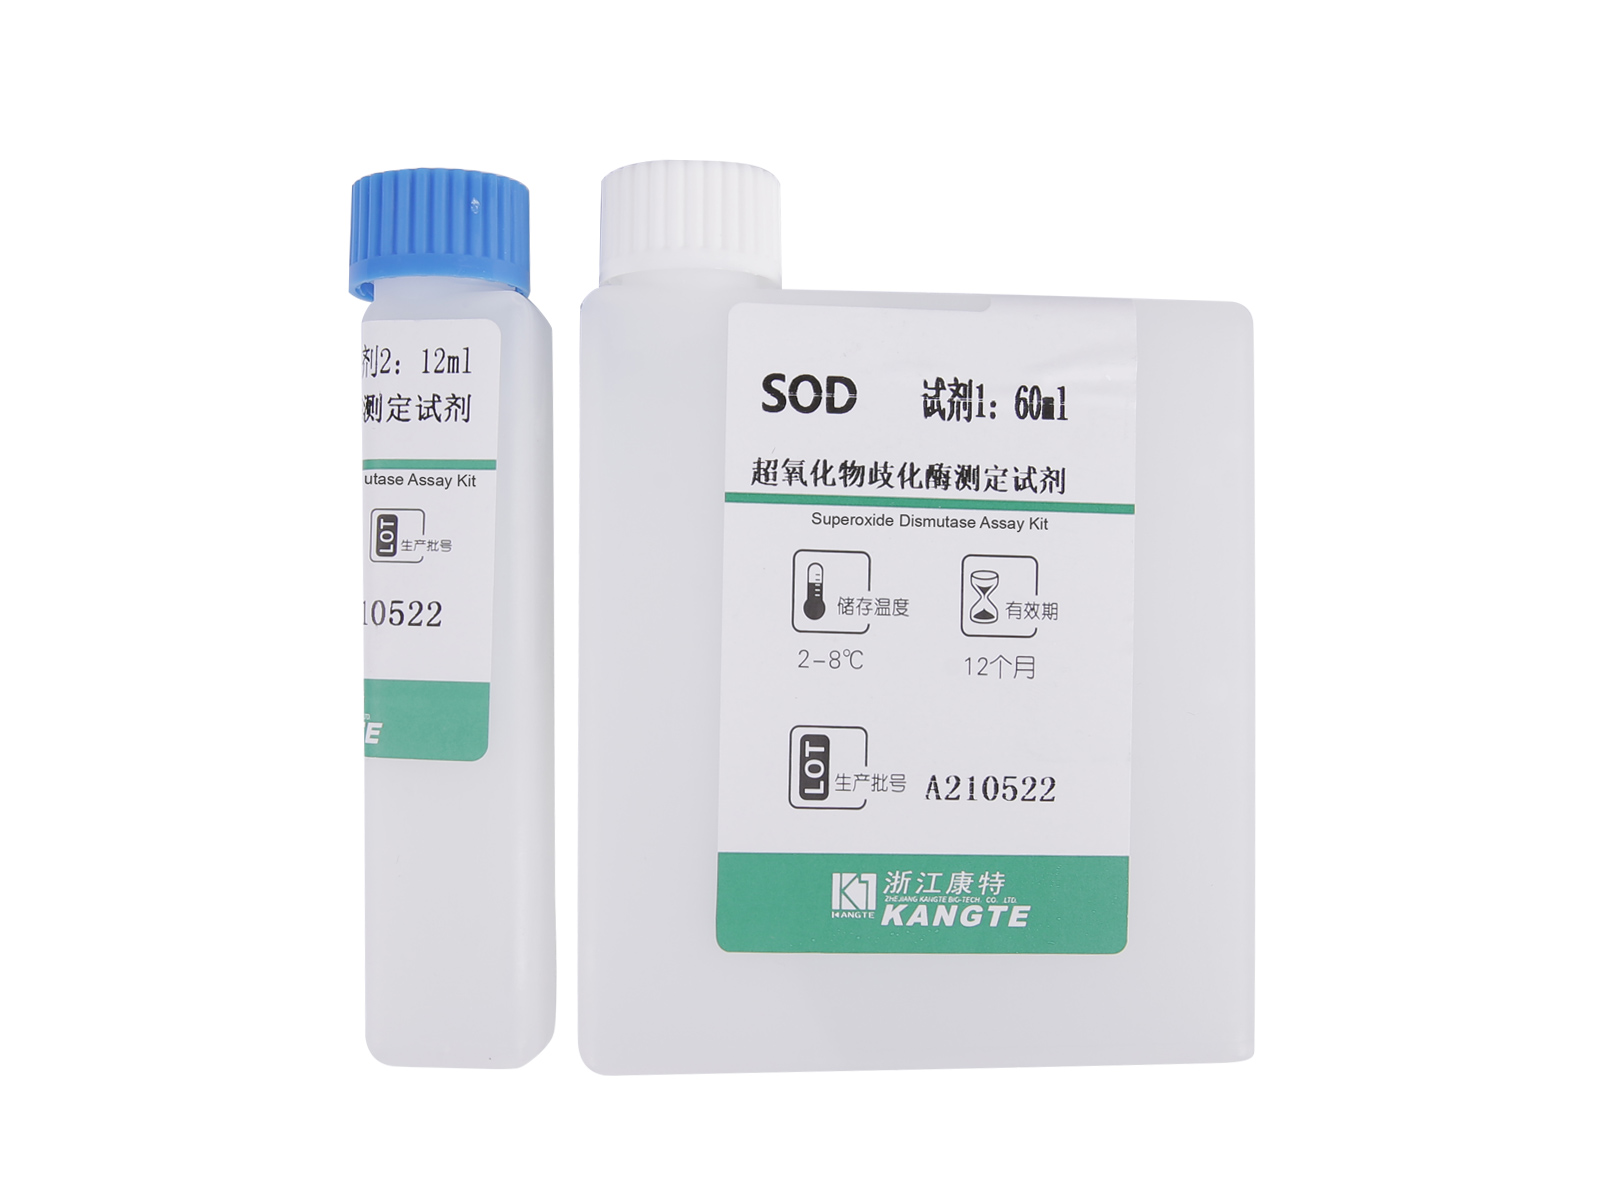 【SOD】 Kit de testare pentru superoxid dismutază (metoda colorimetrică)